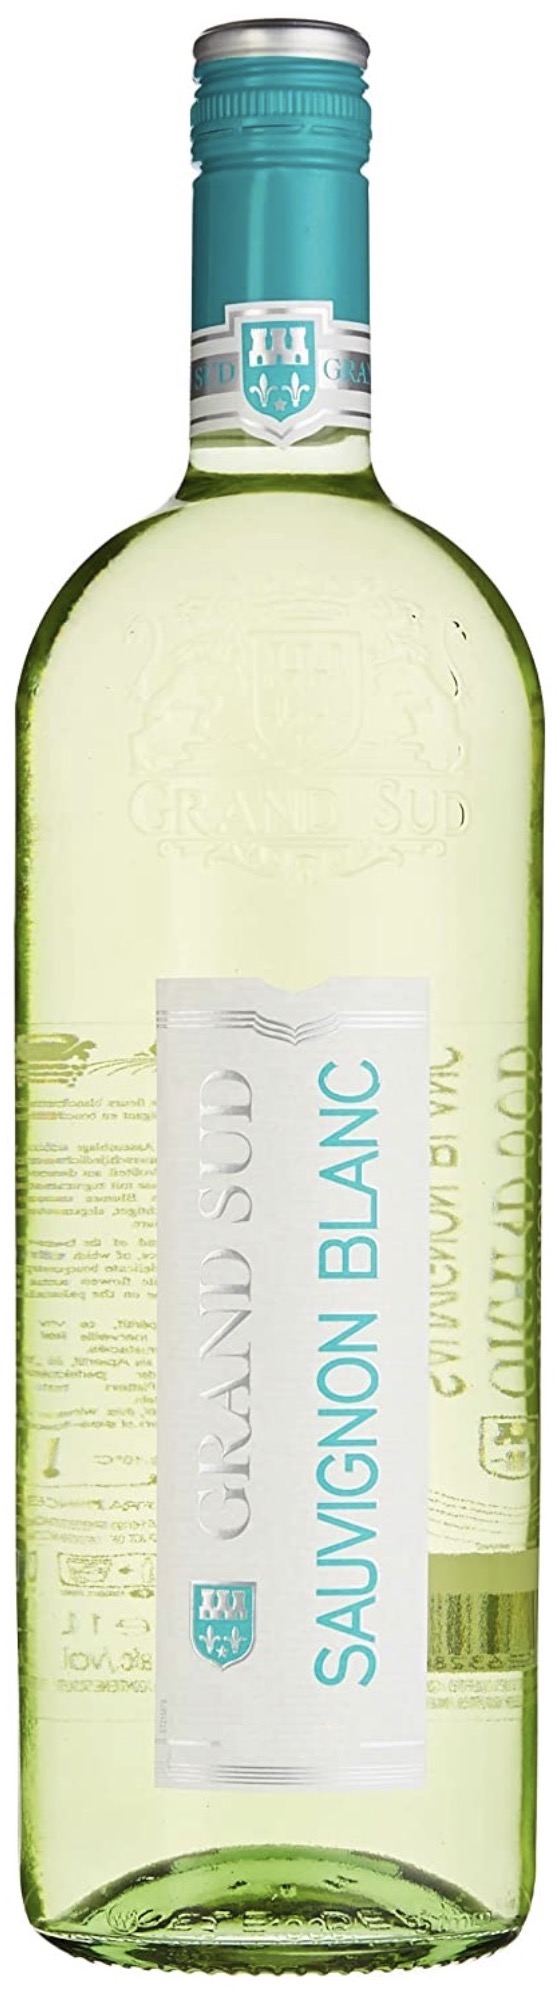 Grand Sud Sauvignon Blanc 11,5% vol. 1L